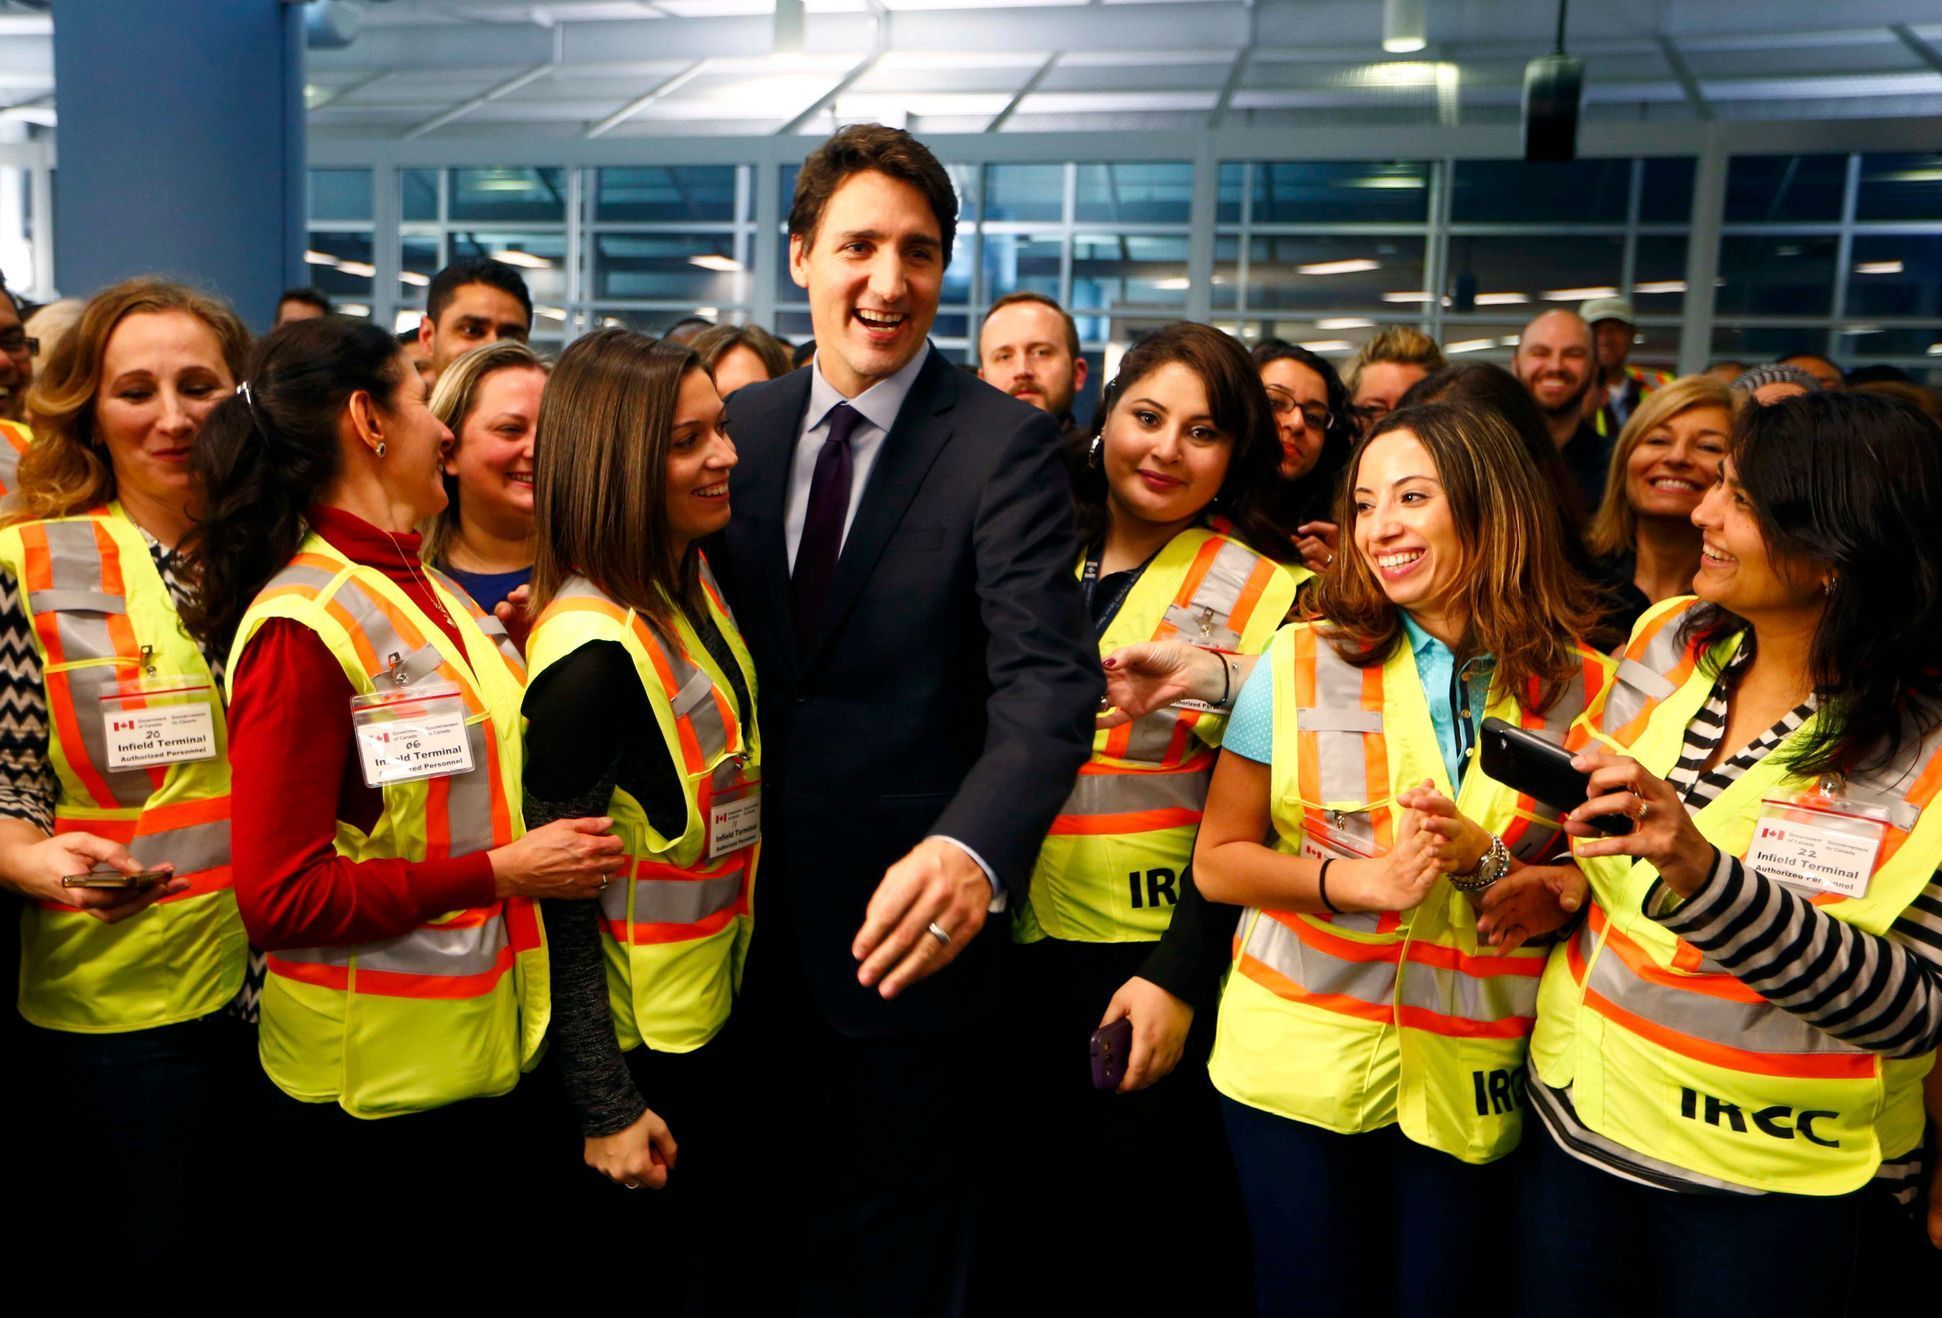 Do Kanady dorazili první syrští uprchlíci